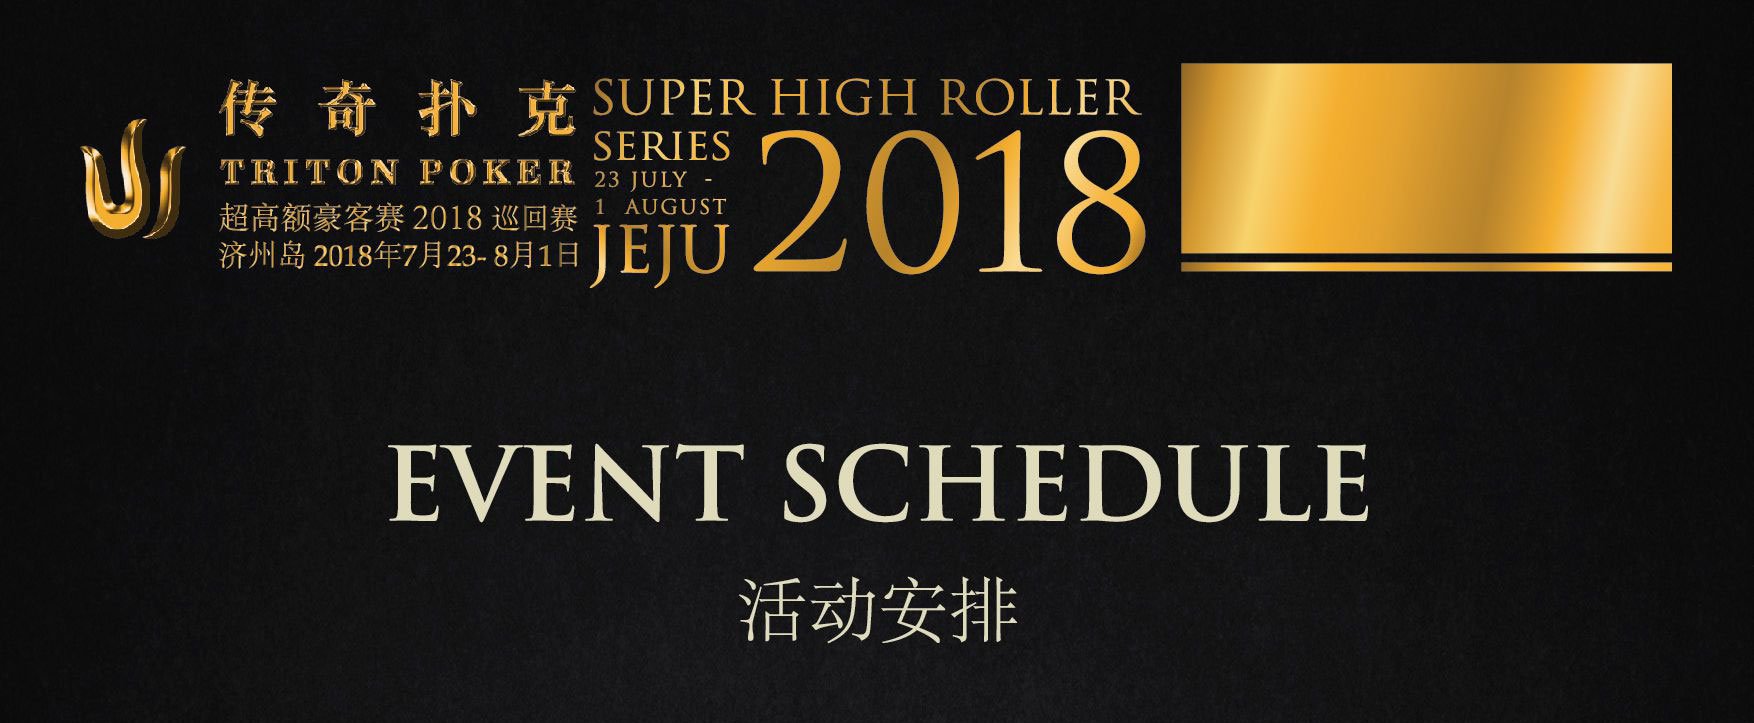 Triton Super High Roller Series Jeju 2018 Event Schedule